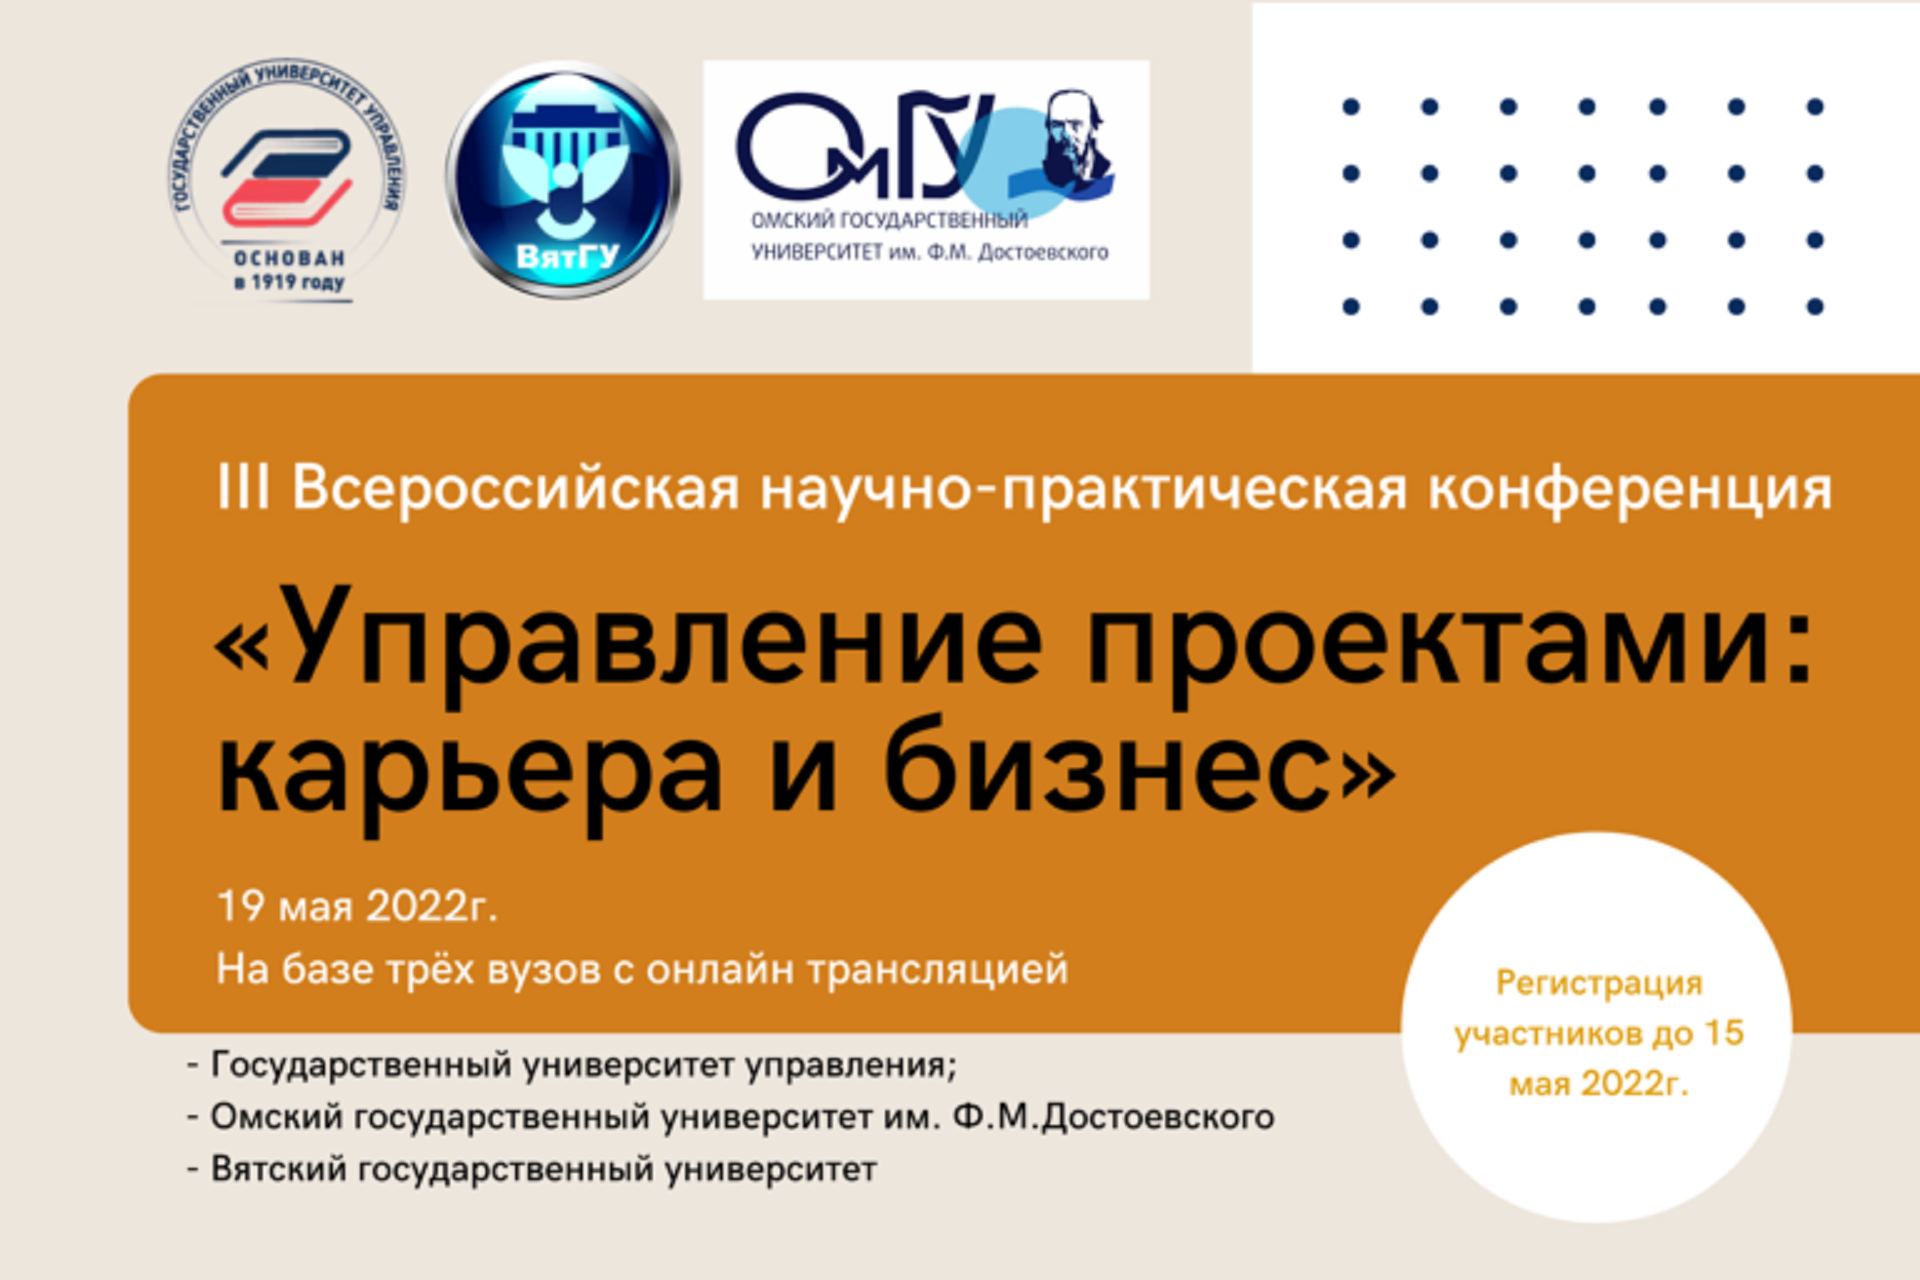 III Всероссийская научно-практическая конференция «Управление проектами: карьера и бизнес»